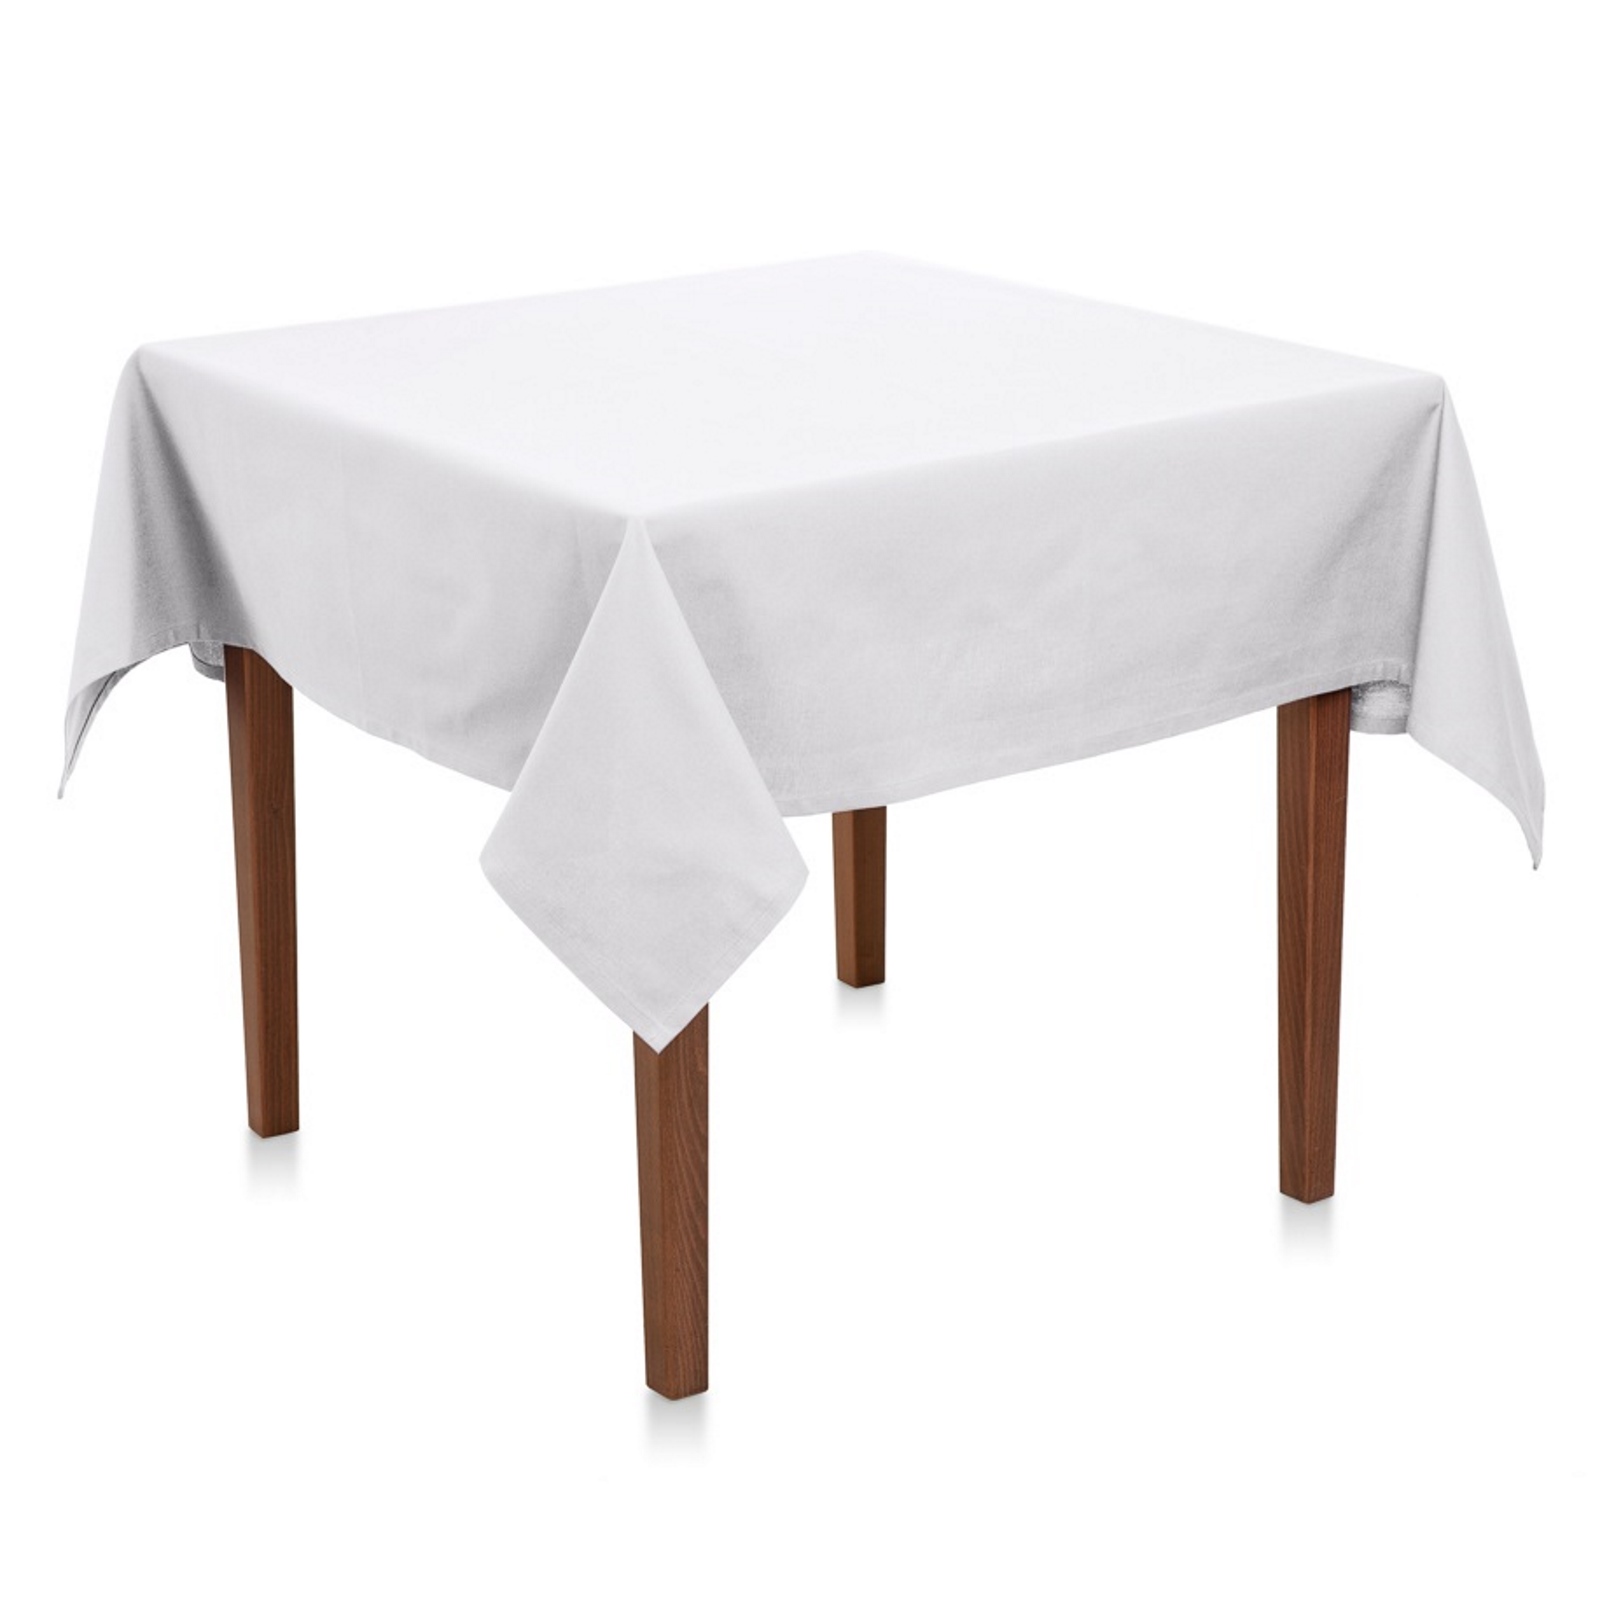 Tischdecke Weiß Baumwolle Linon